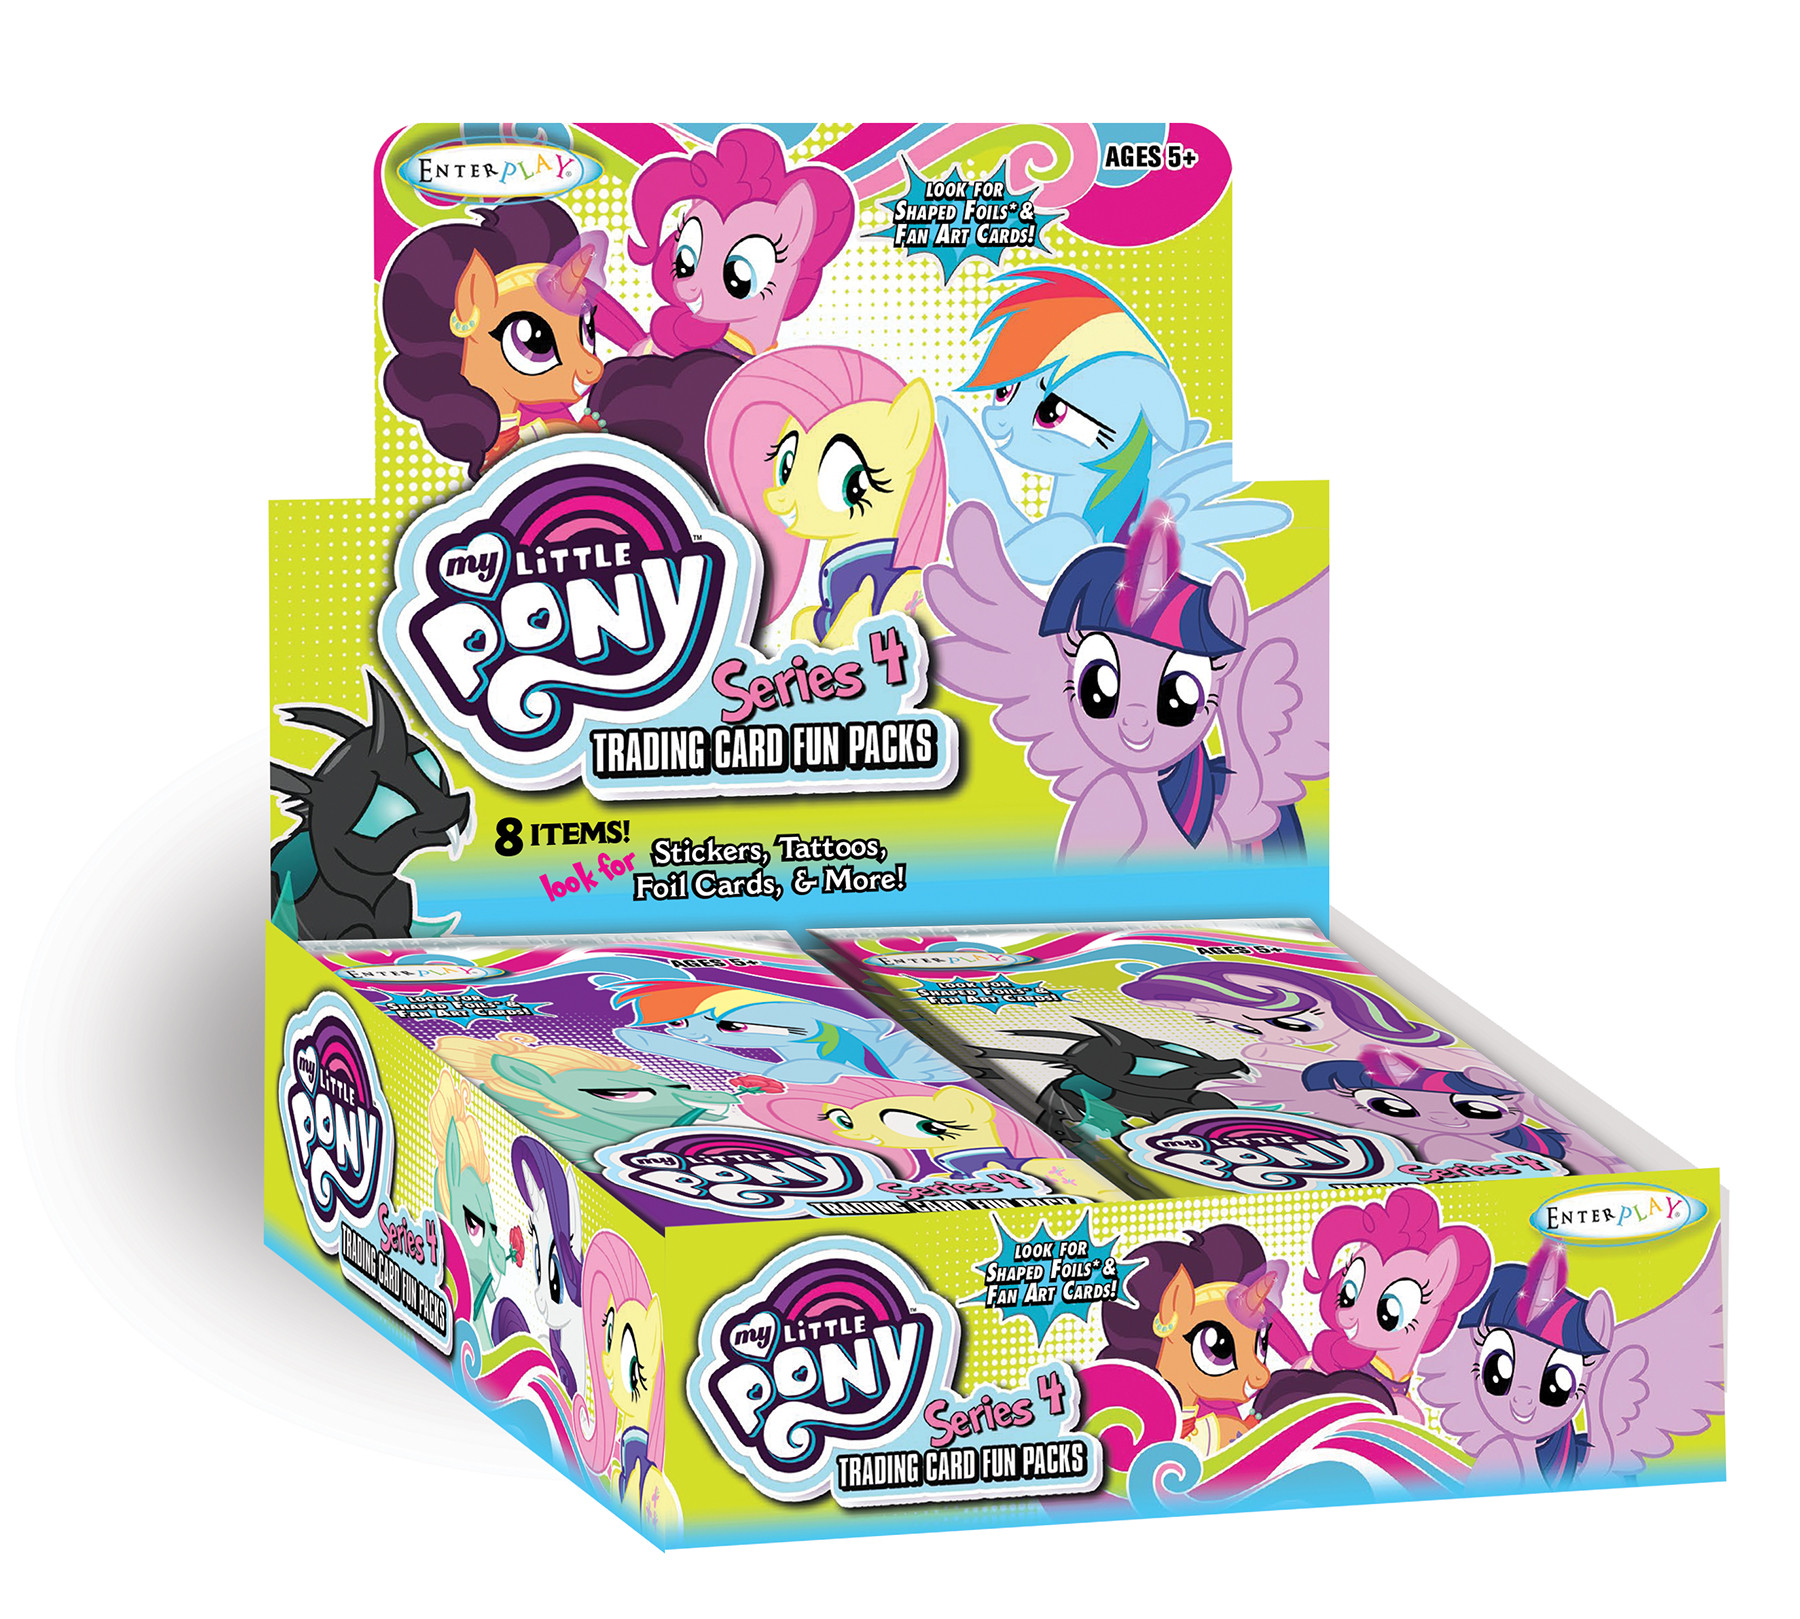 120 packs Bulk Blister 2-Pack My Little Pony Series 4 Trading Card Fun Pack 